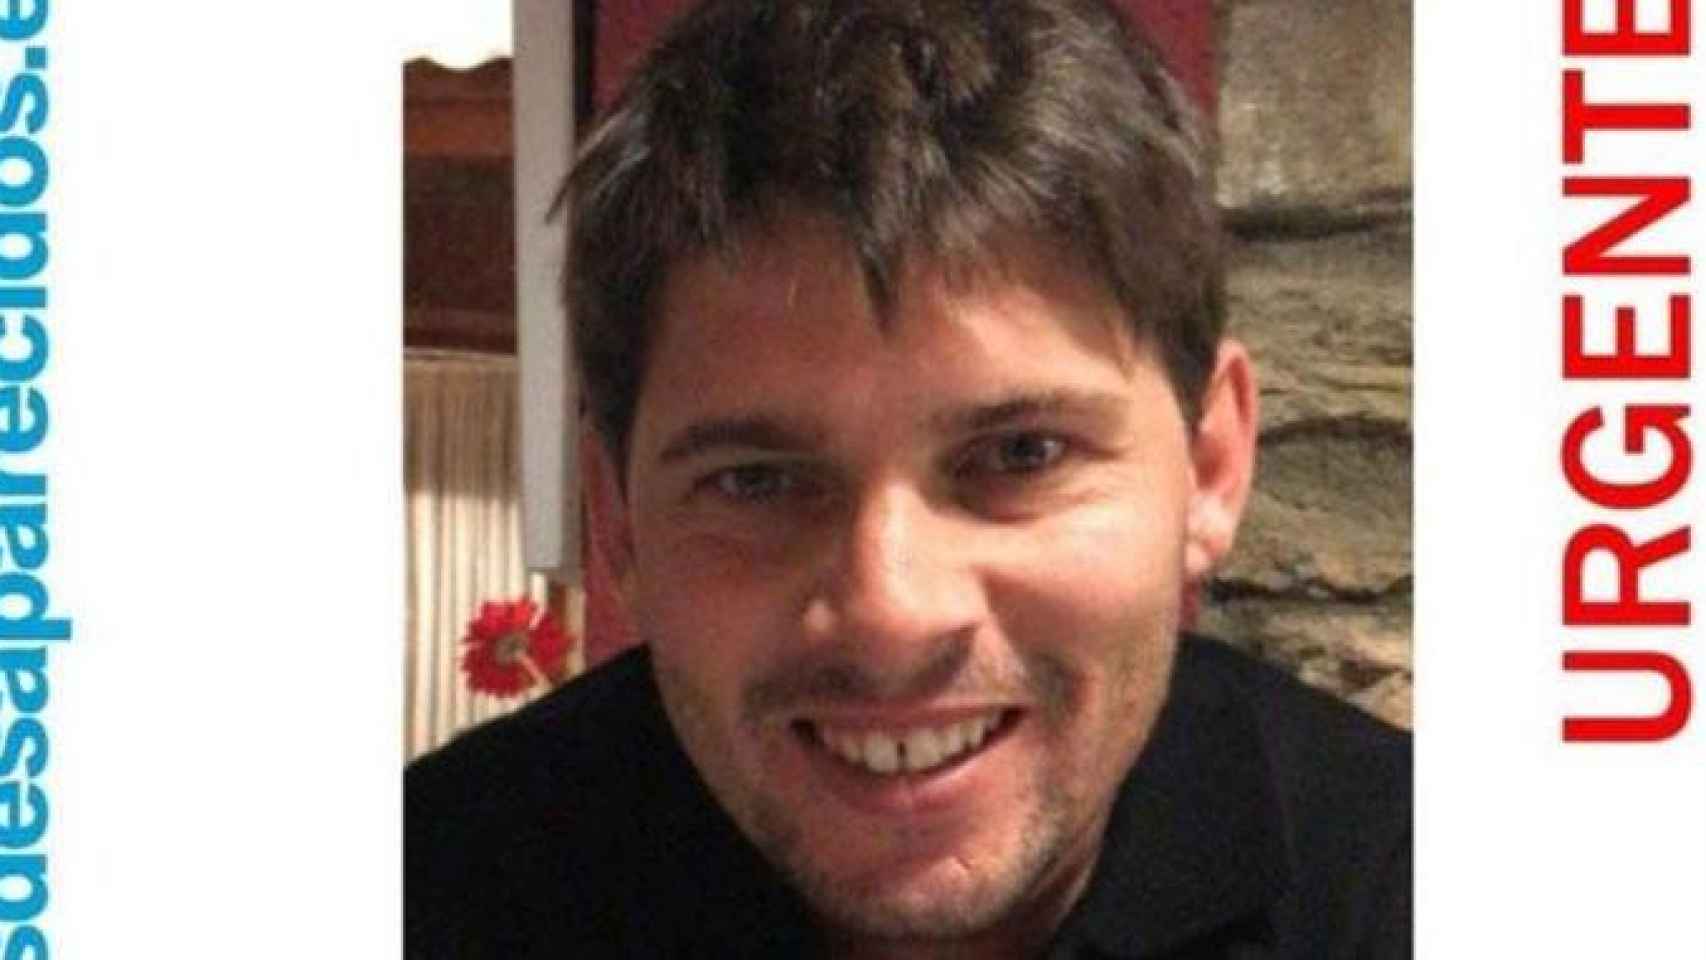 Christian Leprevost, el joven de 27 años que desapareció el pasado 6 de abril en Barcelona / SOS DESAPARECIDOS